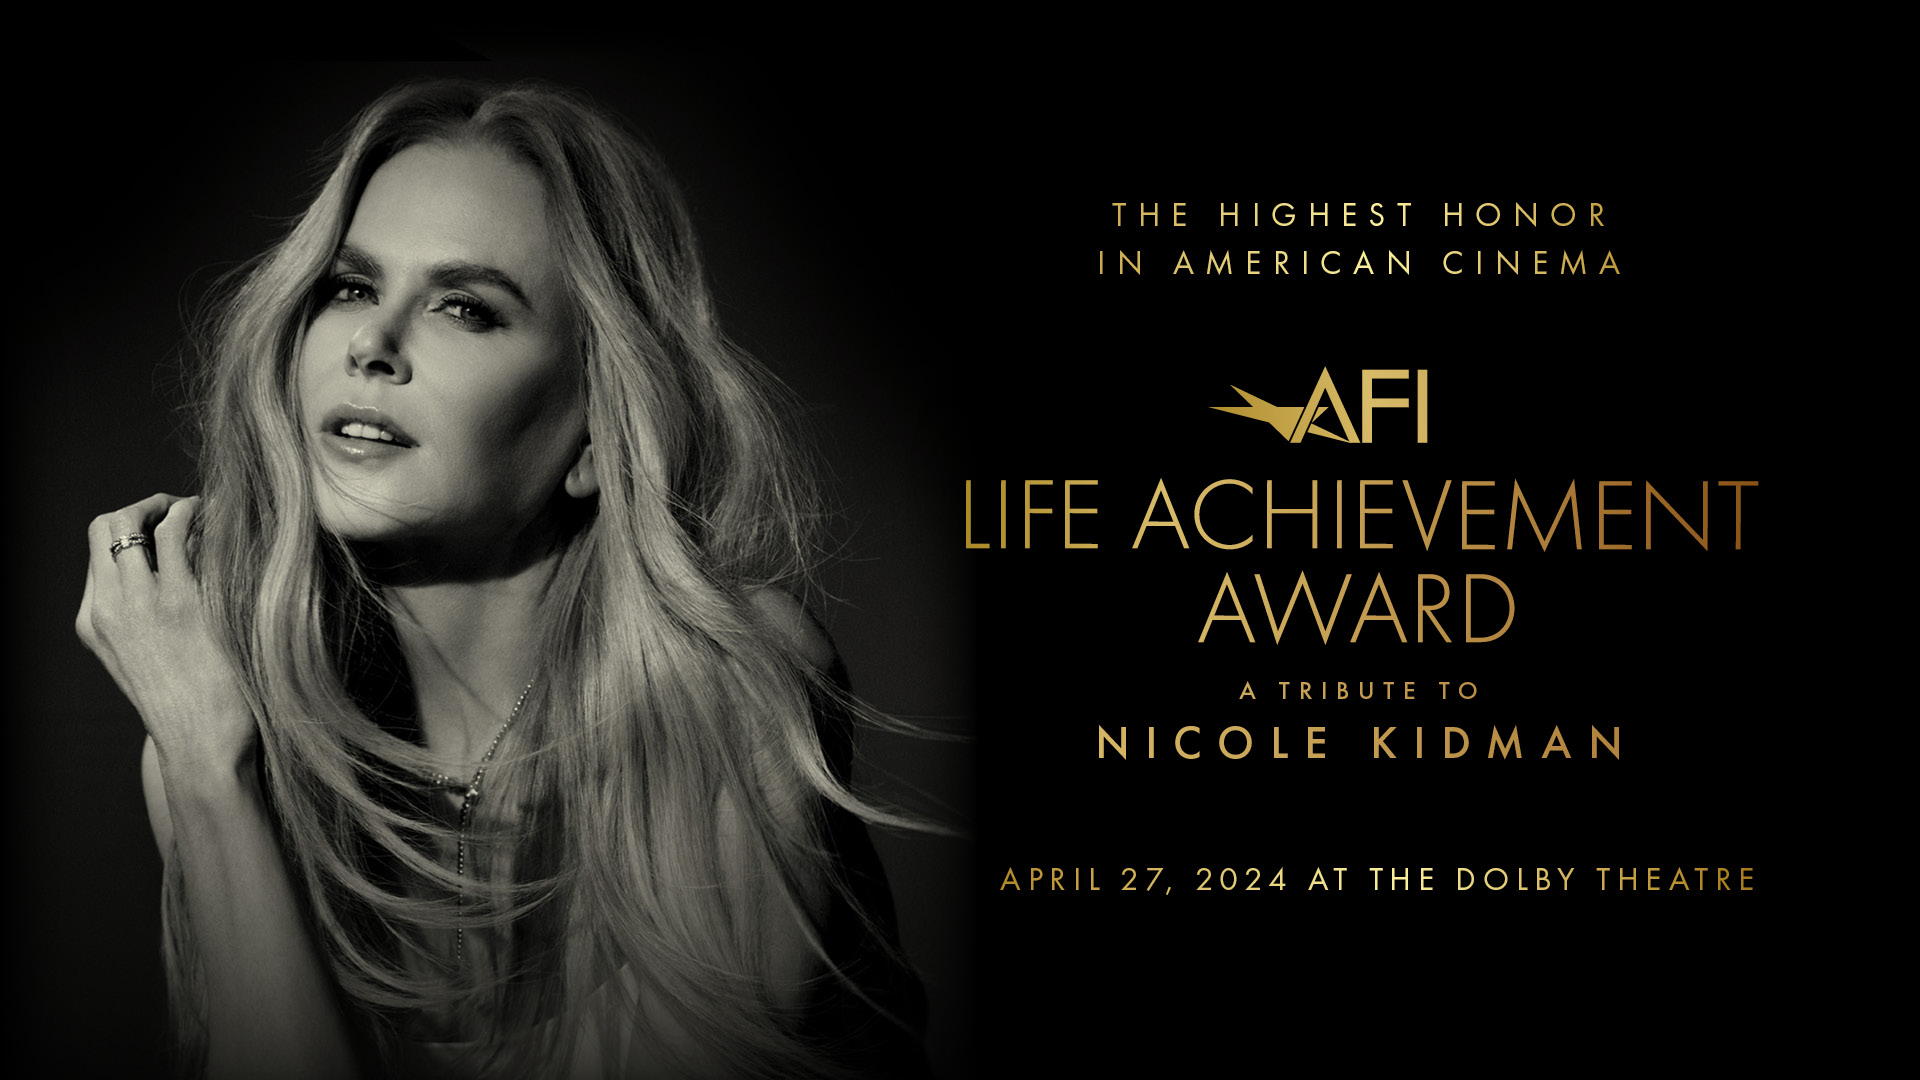 A Tribute to Nicole Kidman